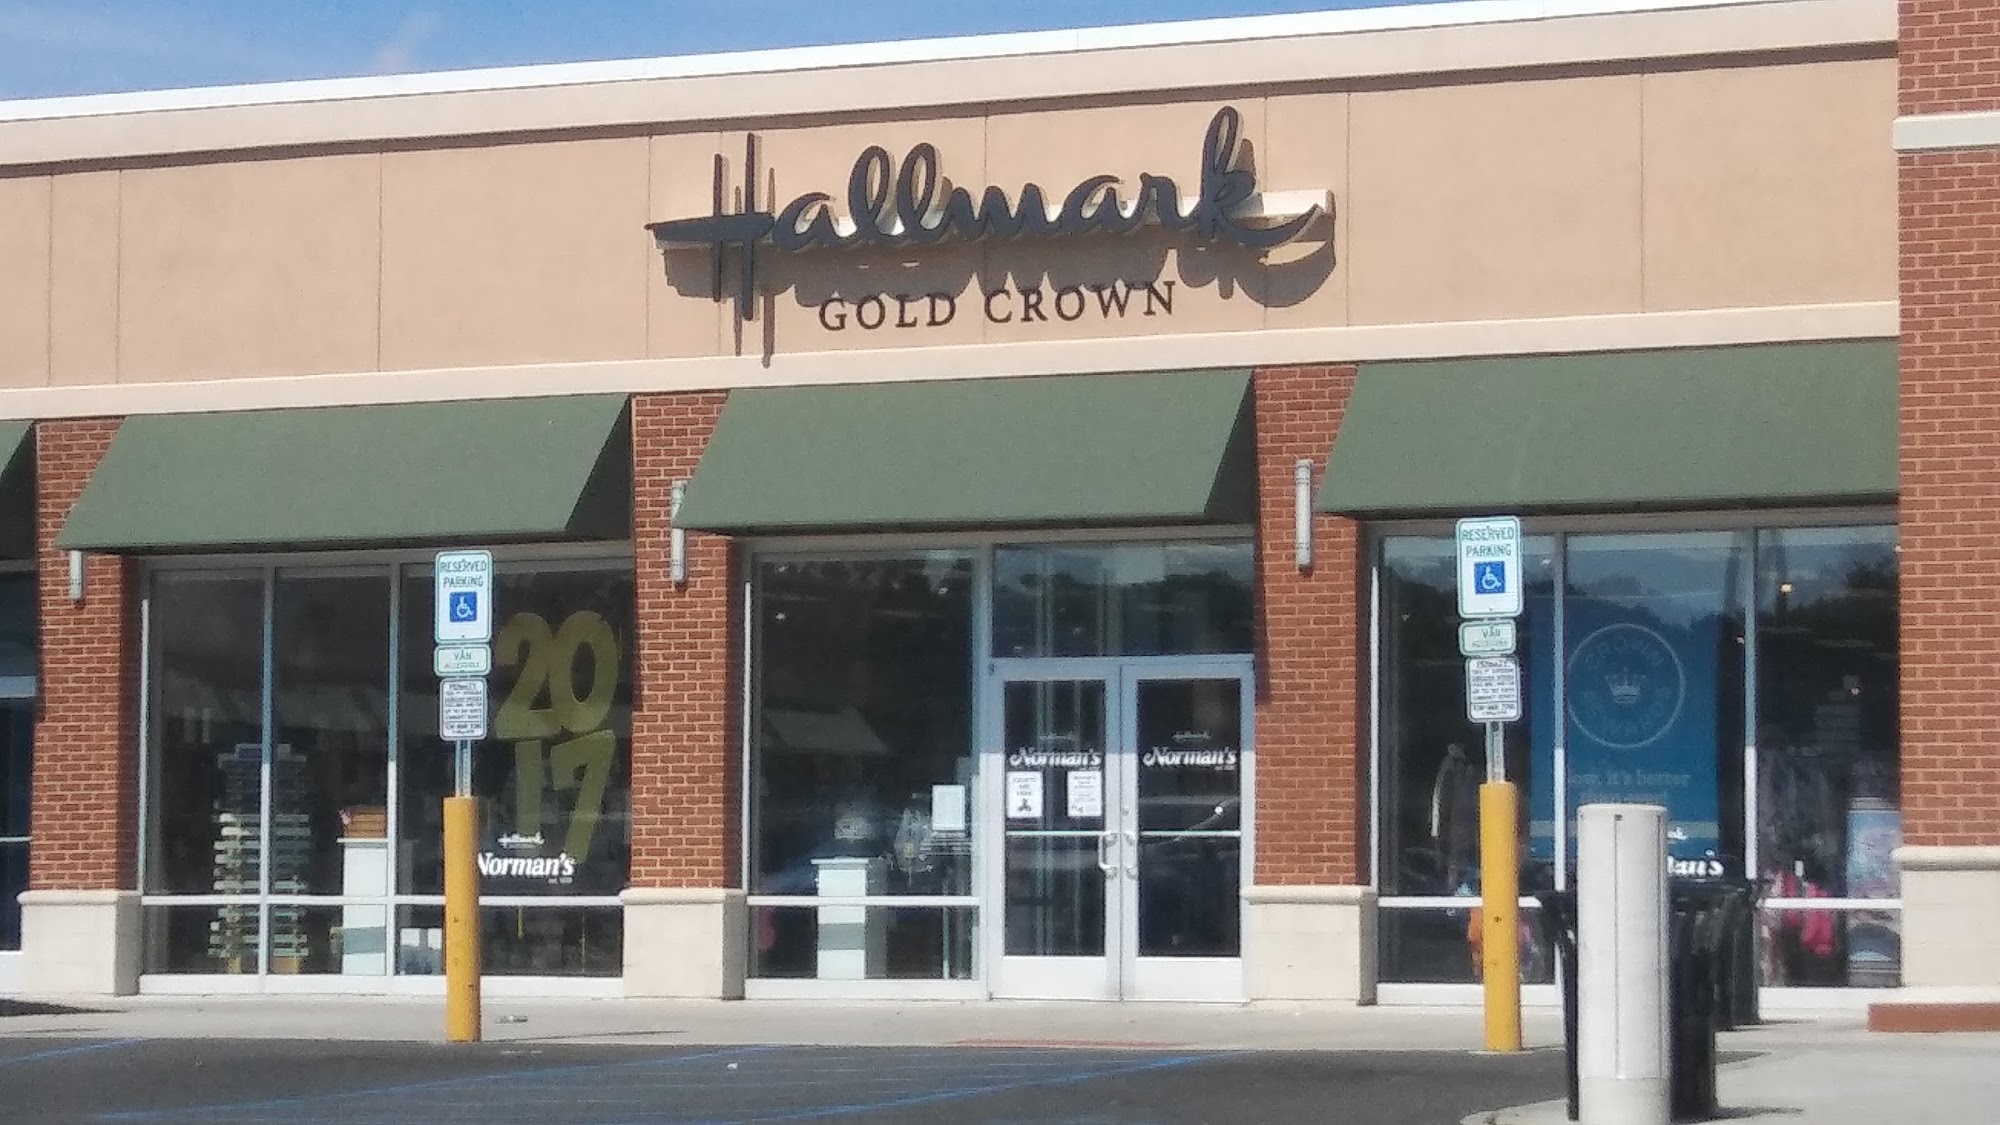 Norman's Hallmark Shop